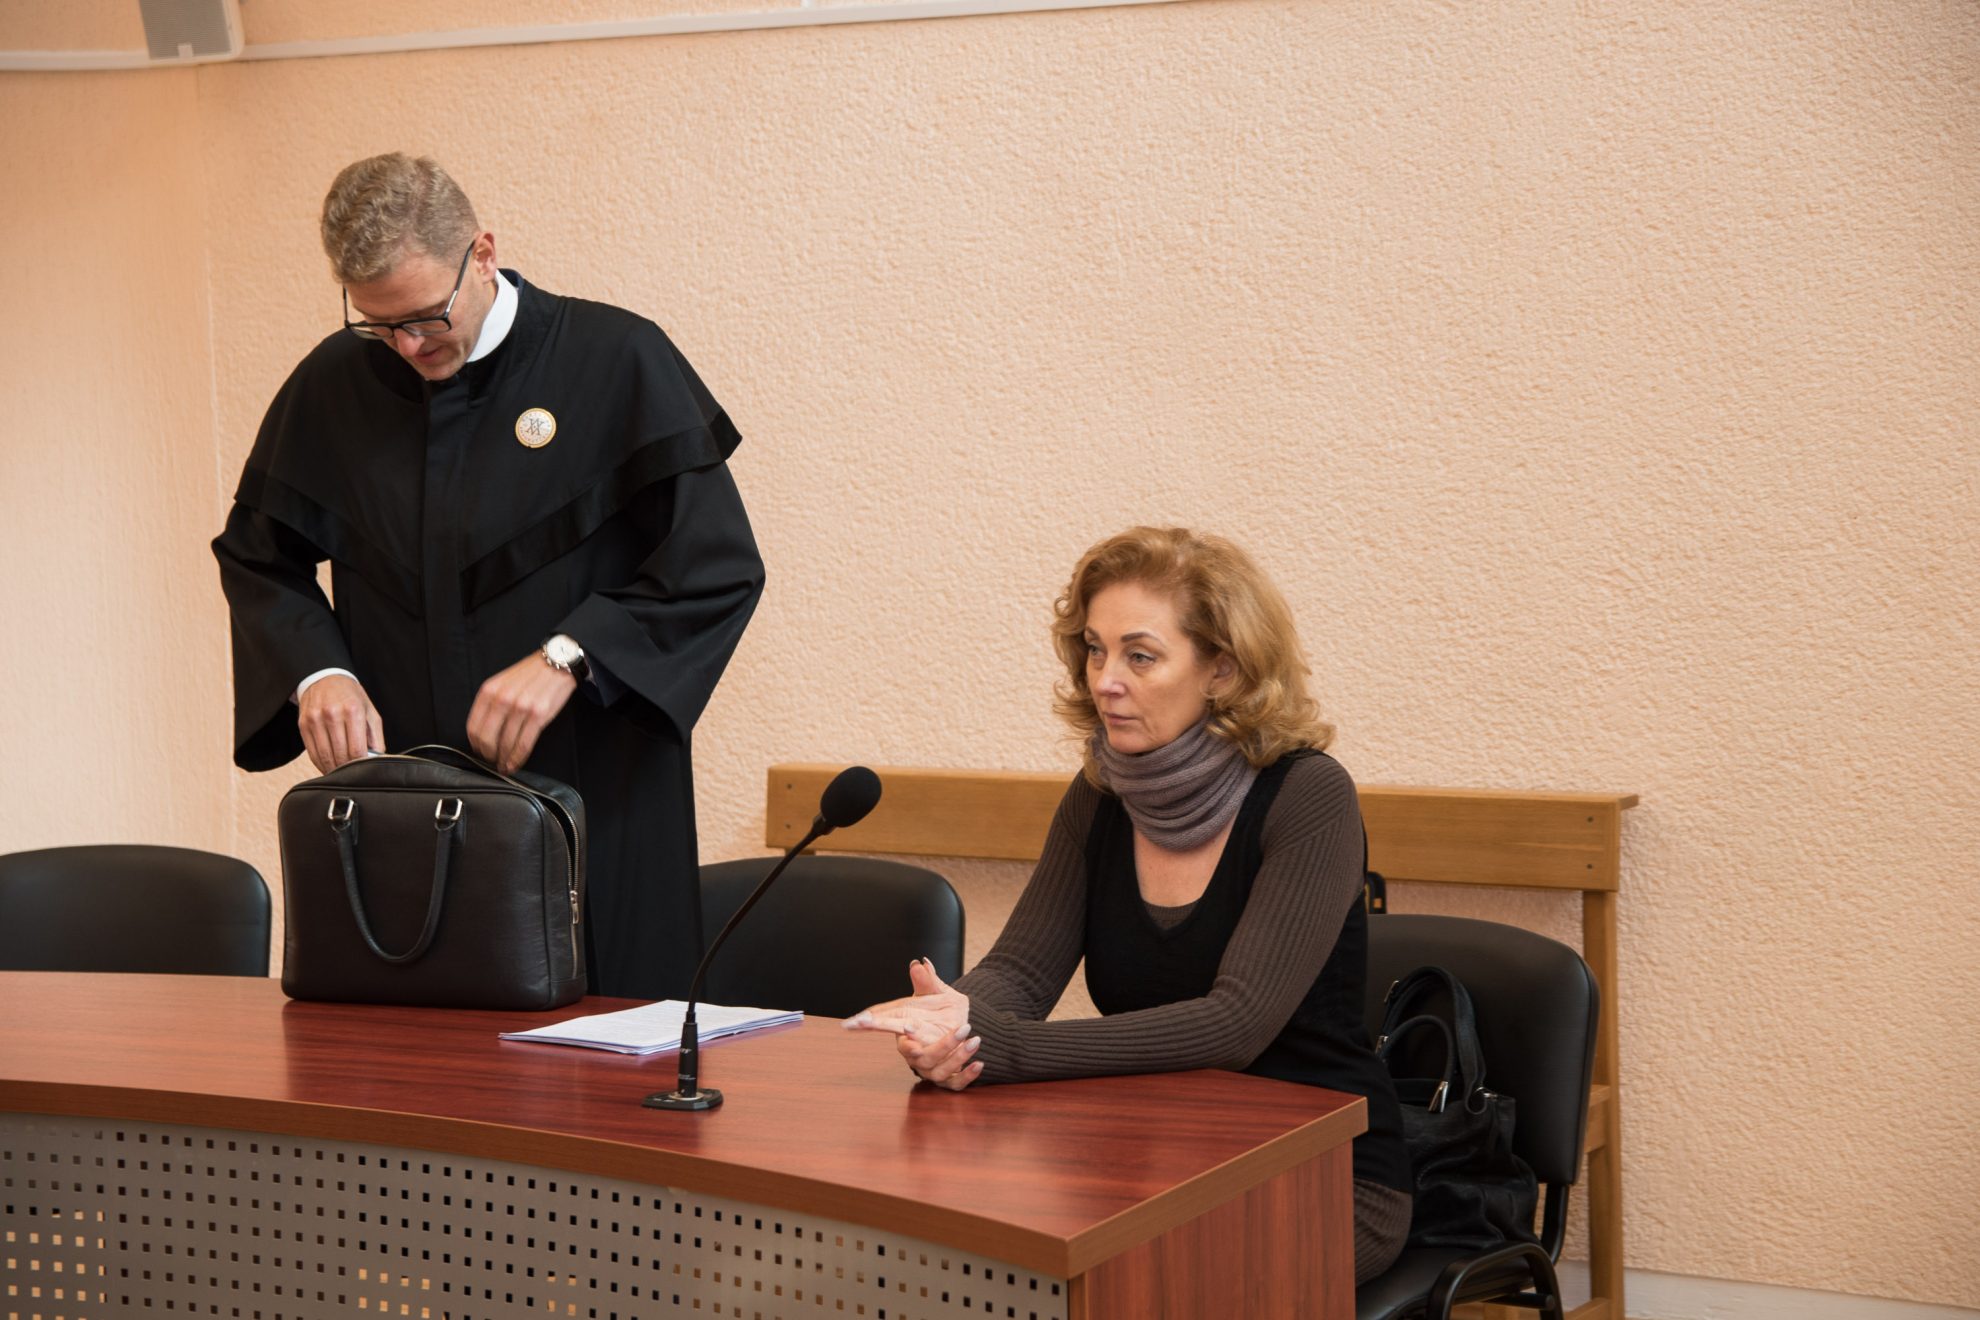 Šešerius metus trukusi Panevėžio krepšinio byla baigėsi žymiai ramiau nei prasidėjo. Vilniaus apygardos teismas (VAT) išteisino buvusius Lietuvos krepšinio federacijos (LKF) ir Panevėžio savivaldybės vadovus.